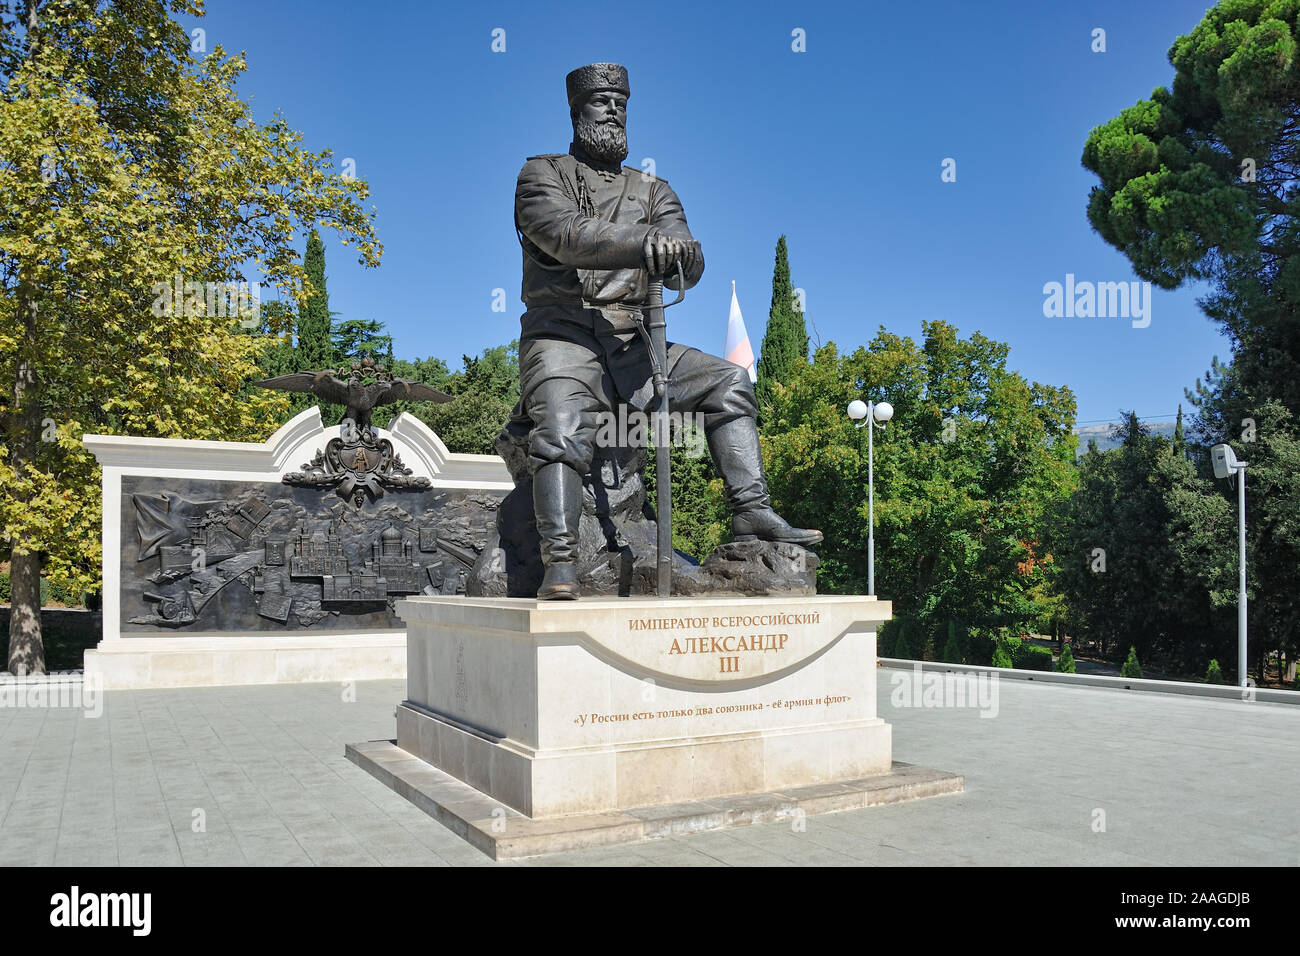 = monumento alla pace lo zar Alessandro III = angolo vista sul monumento ad Alessandro III, l'imperatore di Russia dal 1881 al 1894, il zar russo Foto Stock